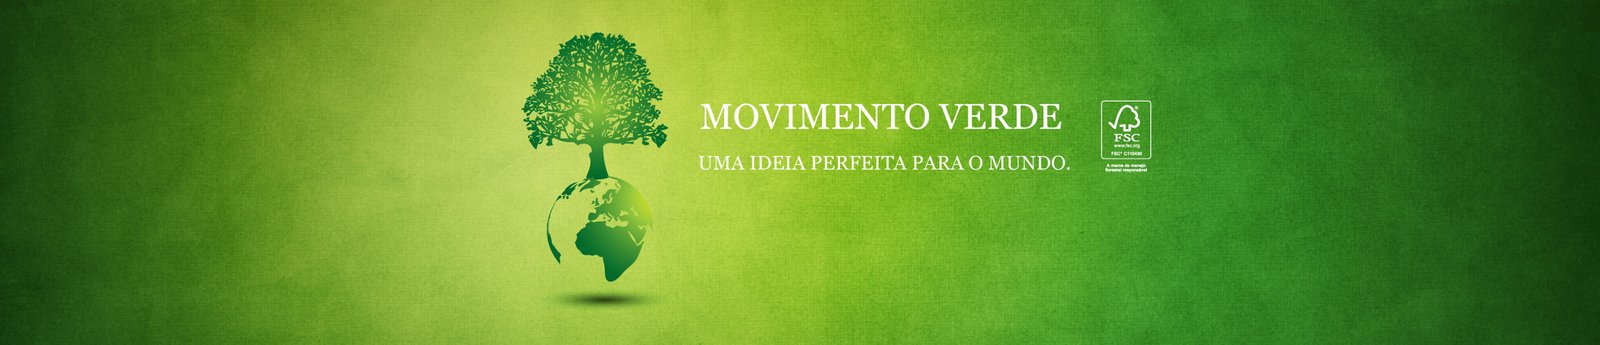 banner_movimento_verde2x.jpg